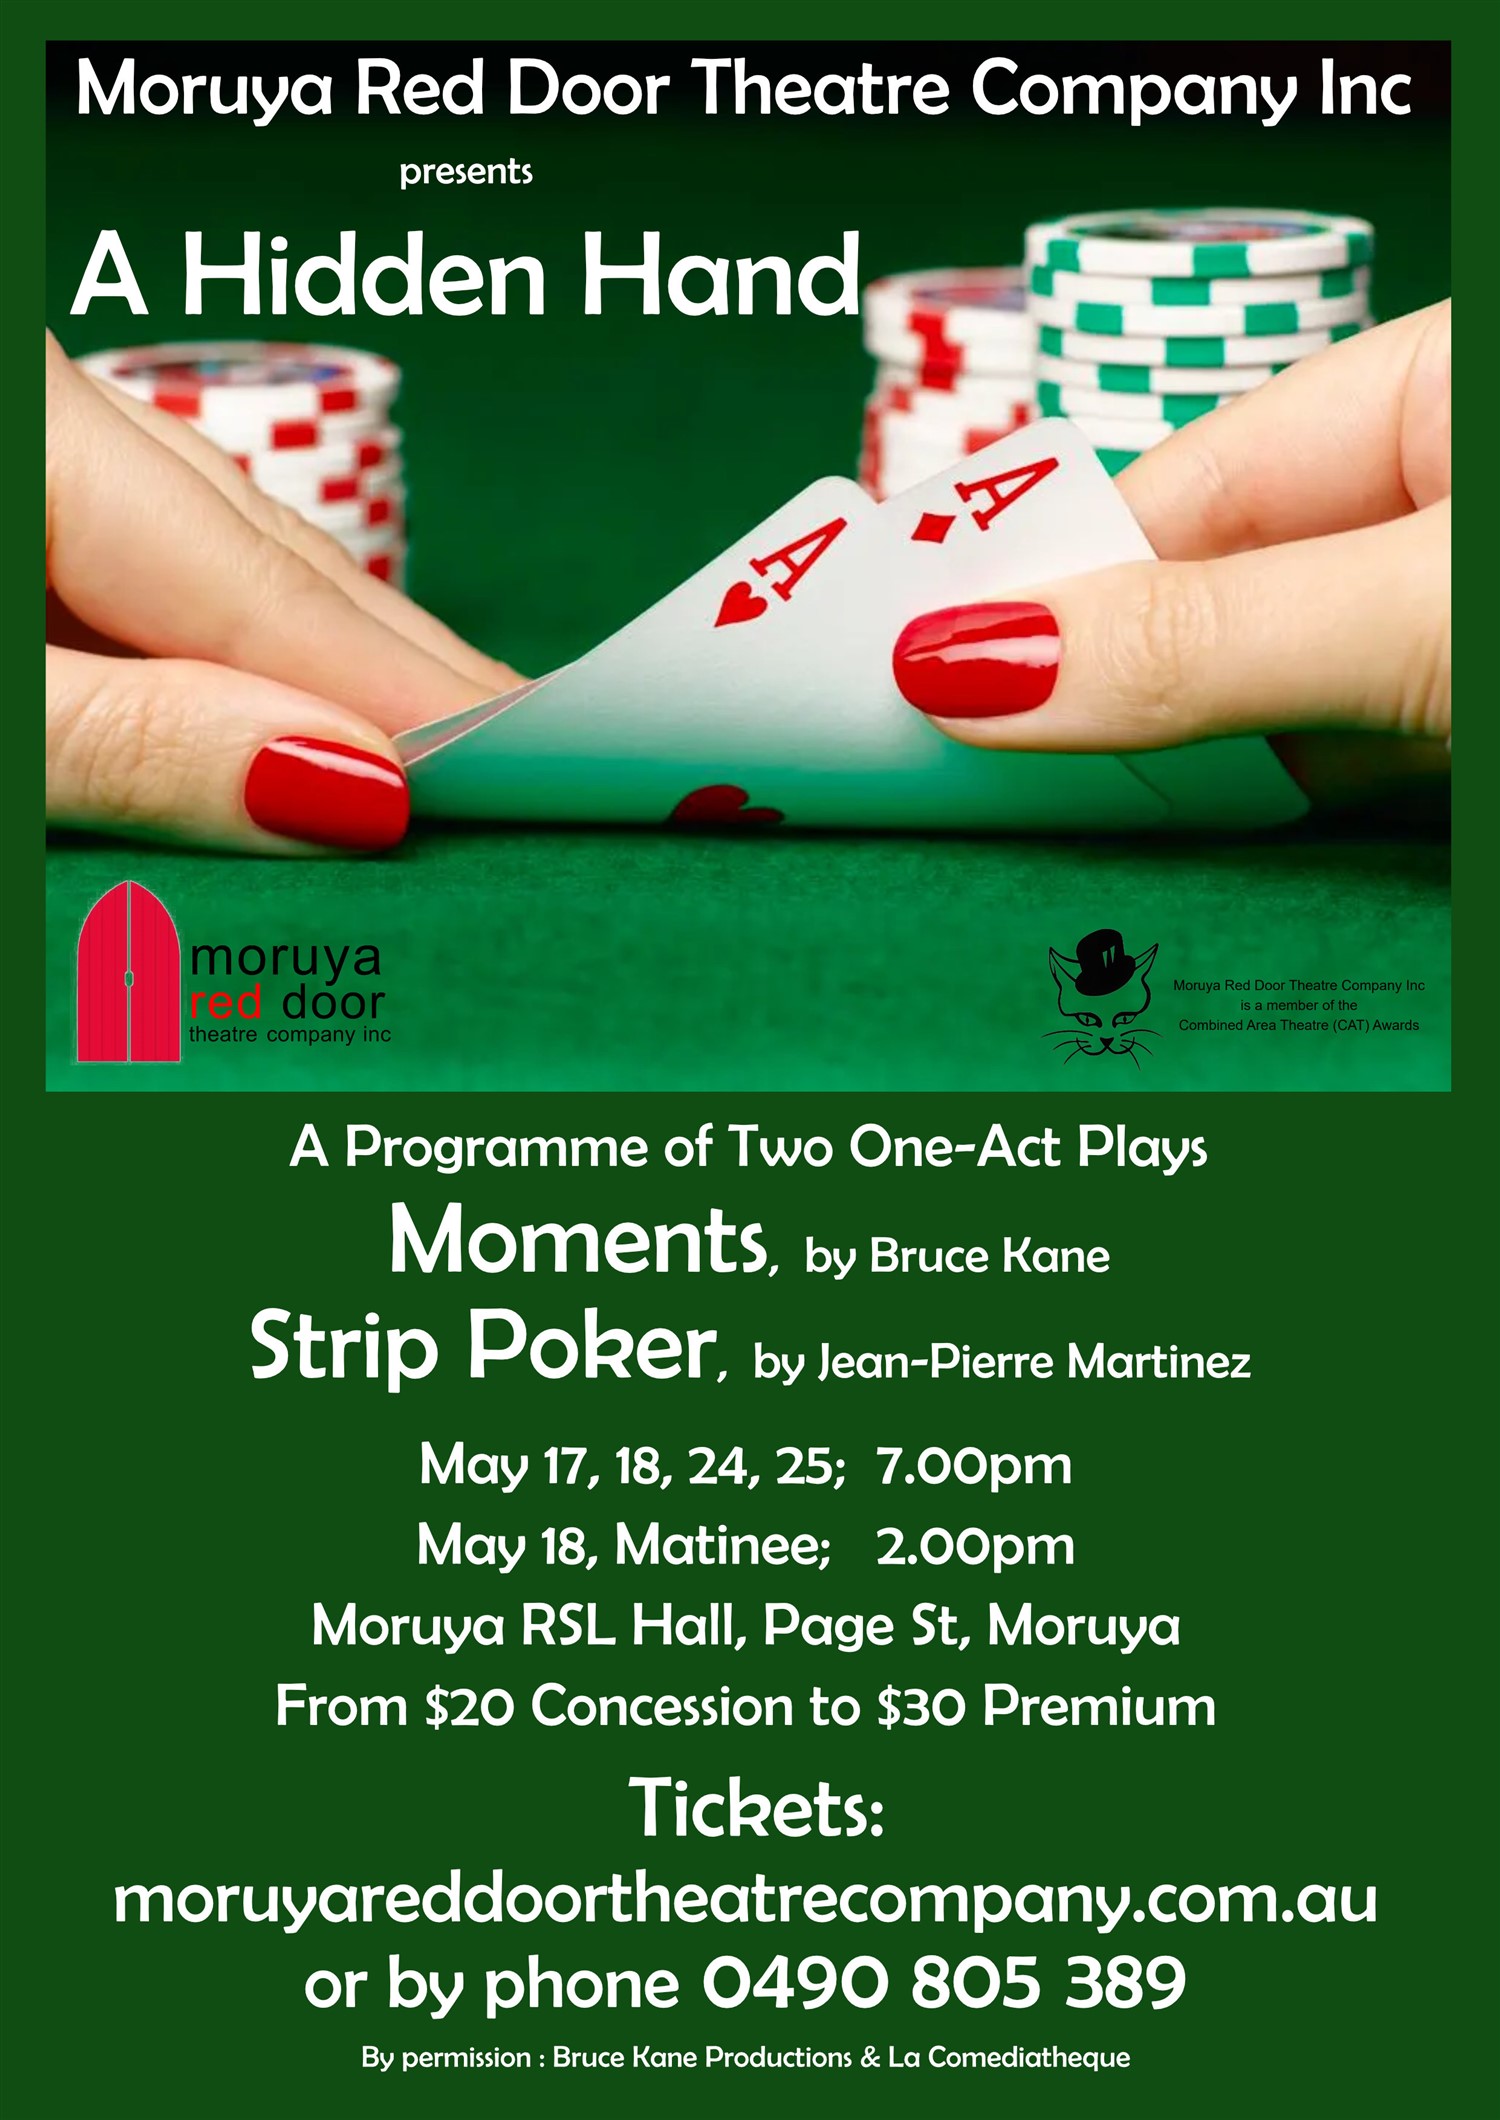 A Hidden Hand ~ Theatre Seating Our Matinee Performance on may. 18, 14:00@Moruya RSL - Elegir asientoCompra entradas y obtén información enMoruya Red Door Theatre 